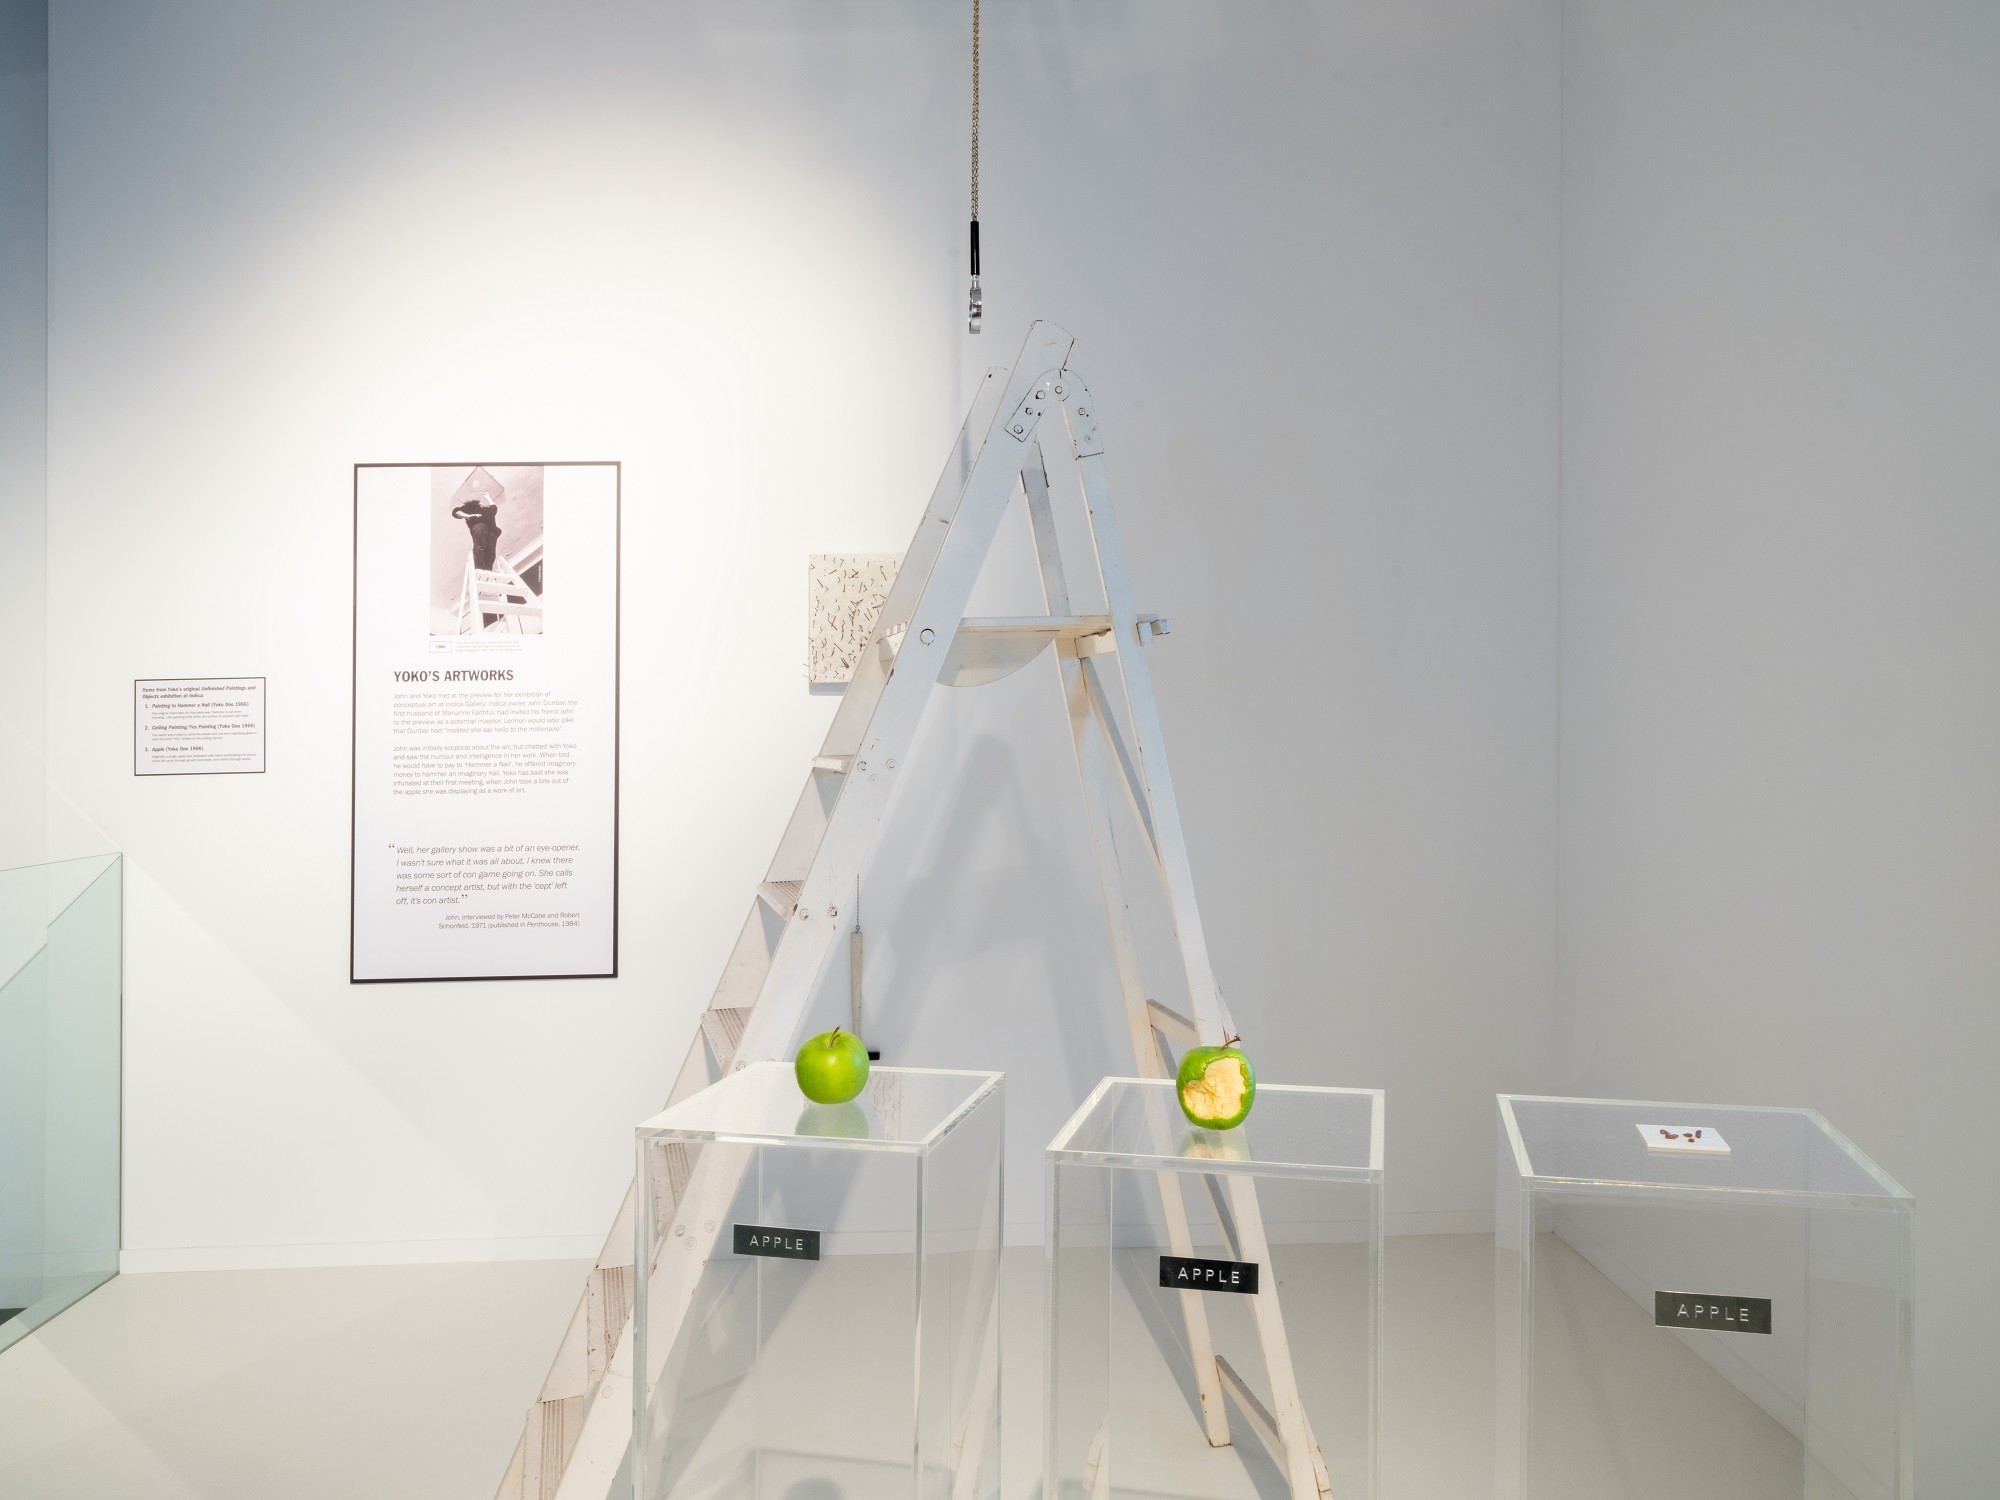 2020年10月、オノ・ヨーコとジョン・レノンの展覧会が六本木で開催